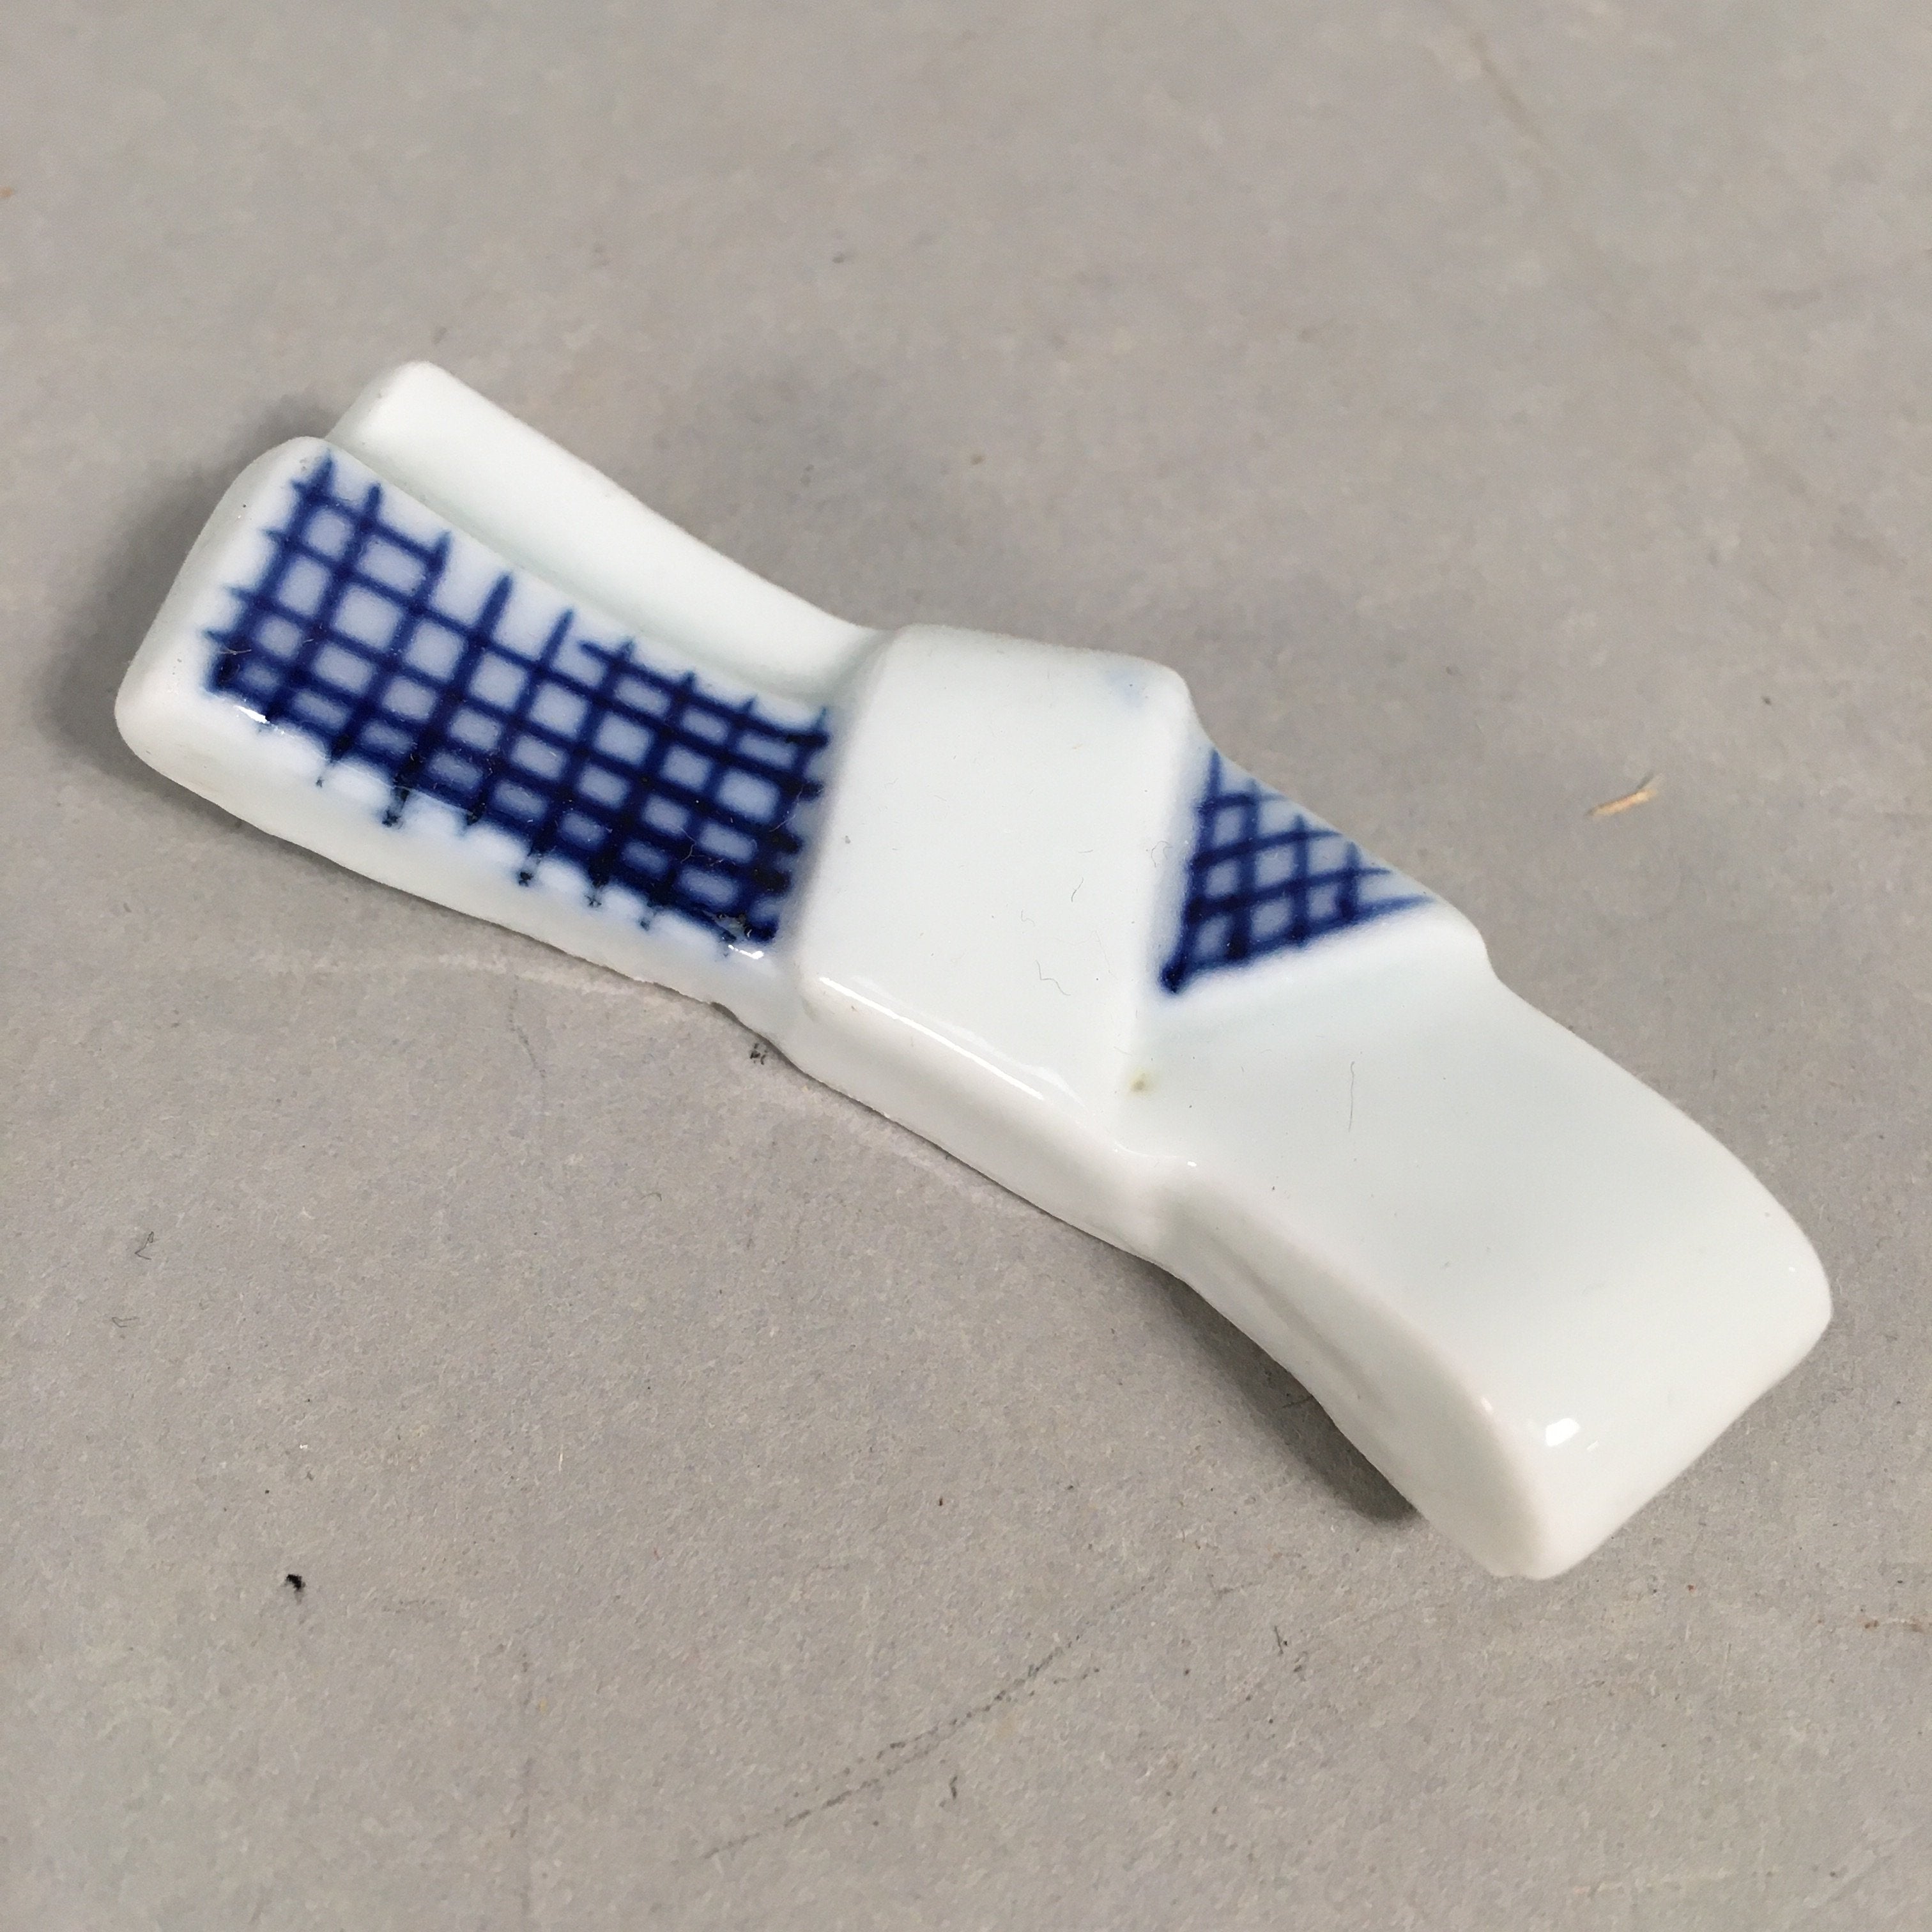 Japanese Porcelain Chopstick Rest Holder Vtg Blue White Sometsuke Tie CR191